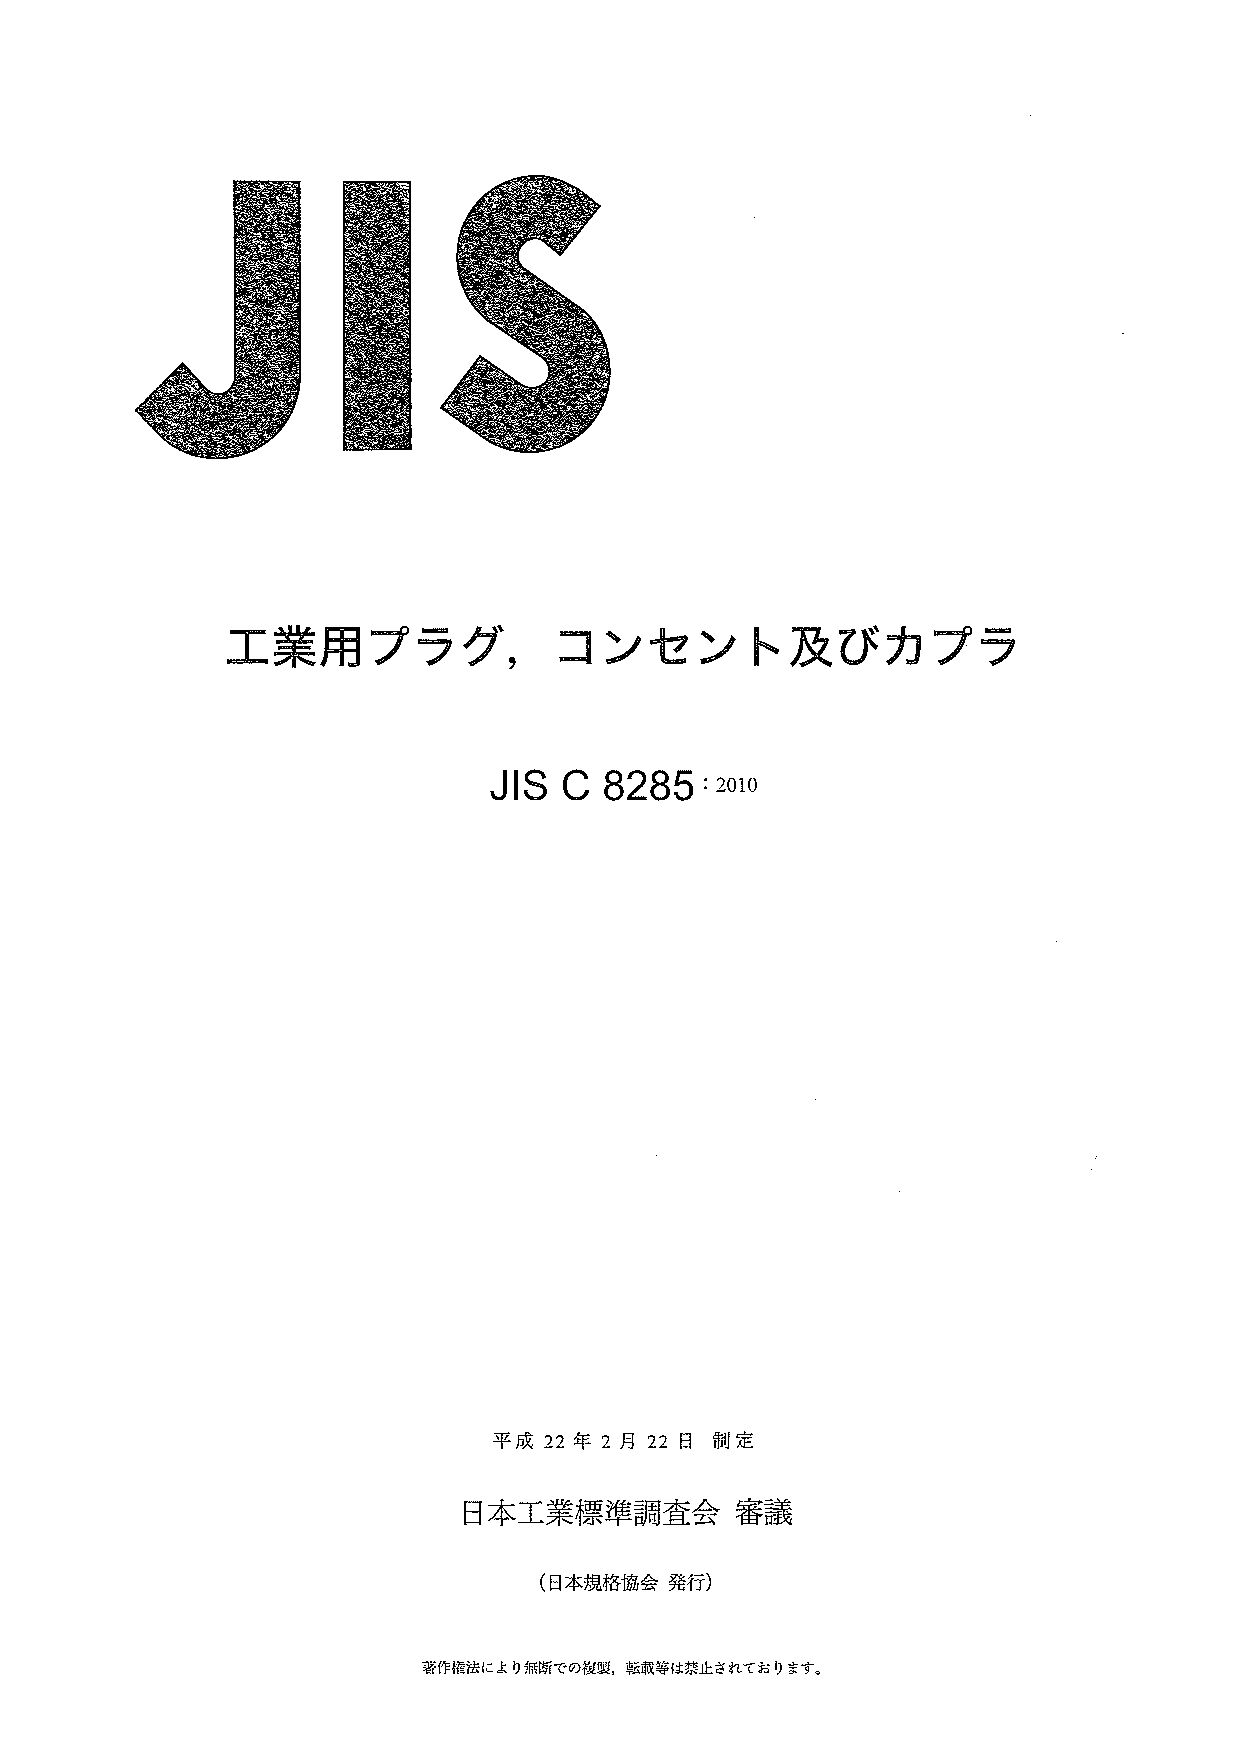 JIS C 8285:2010封面图